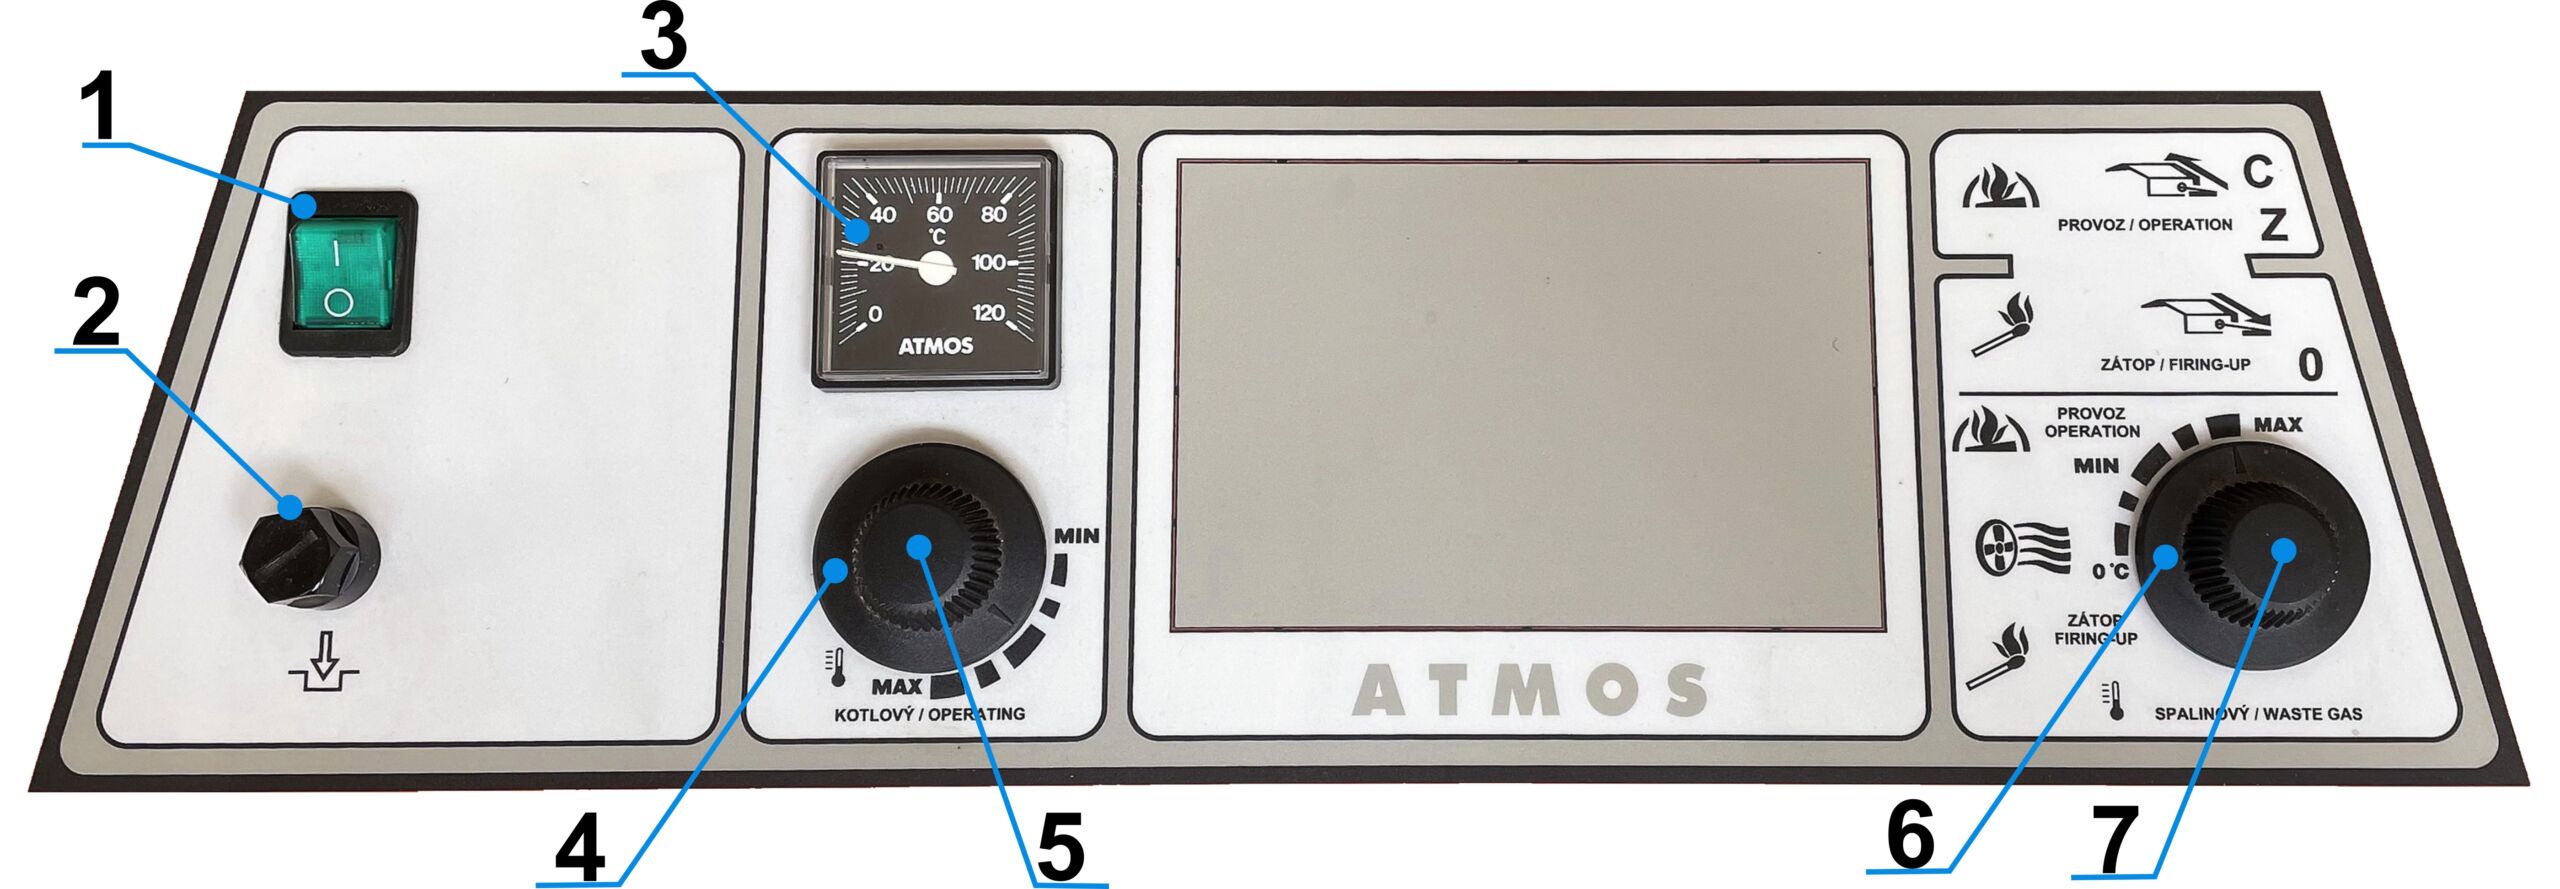 schema nahrdnich termostatu a dalsich dilu na pristrojove desce atmos dc50s